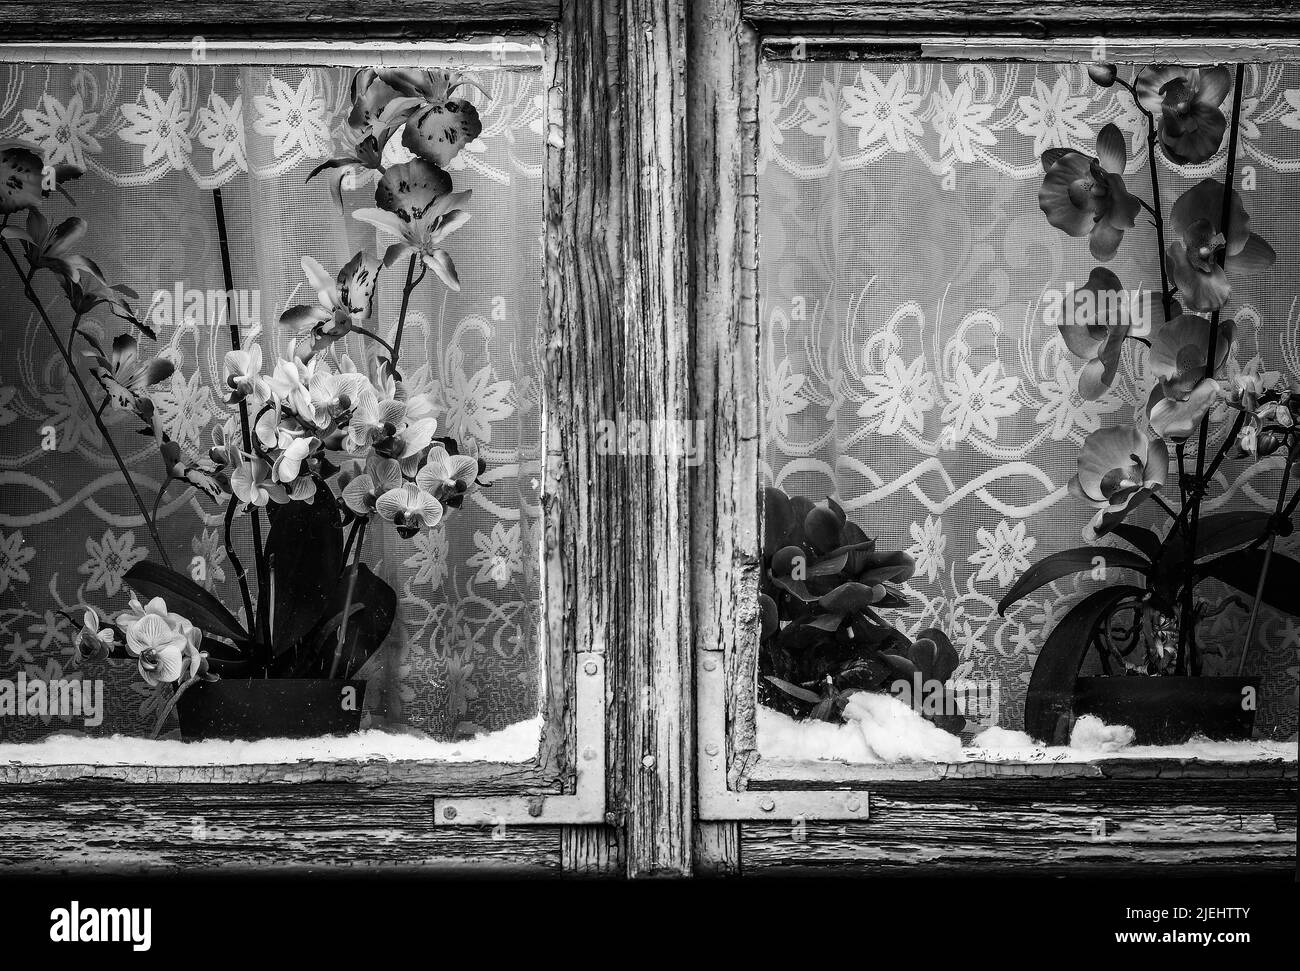 Fleurs d'orchidées dans une fenêtre en bois de l'ancienne maison de campagne, image monochrome Banque D'Images